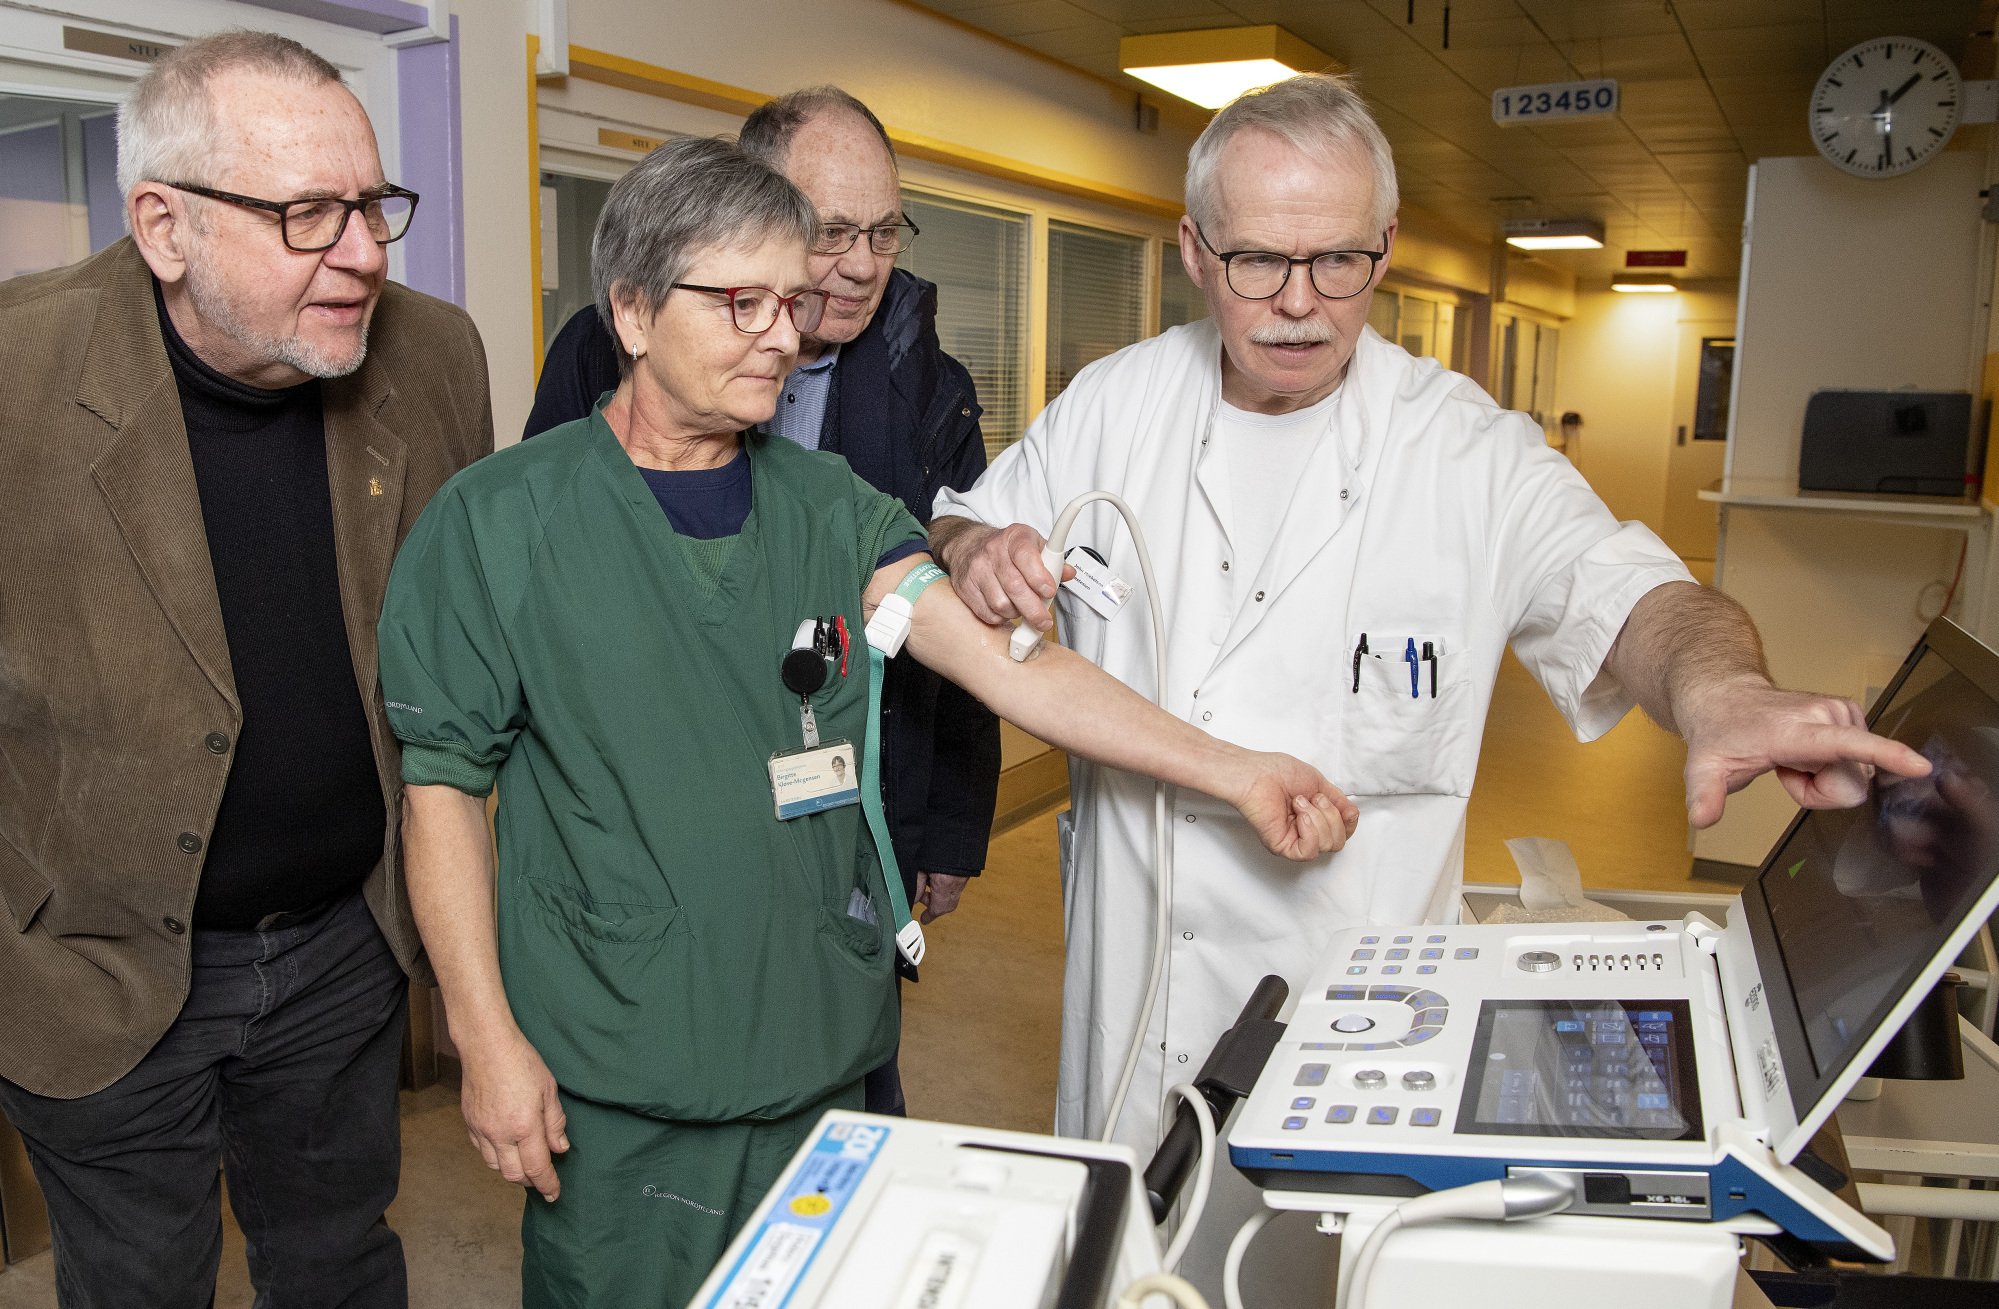 Venner giver en scanner: Ny maskine skal sikre præcisionen på Hobro Sygehus